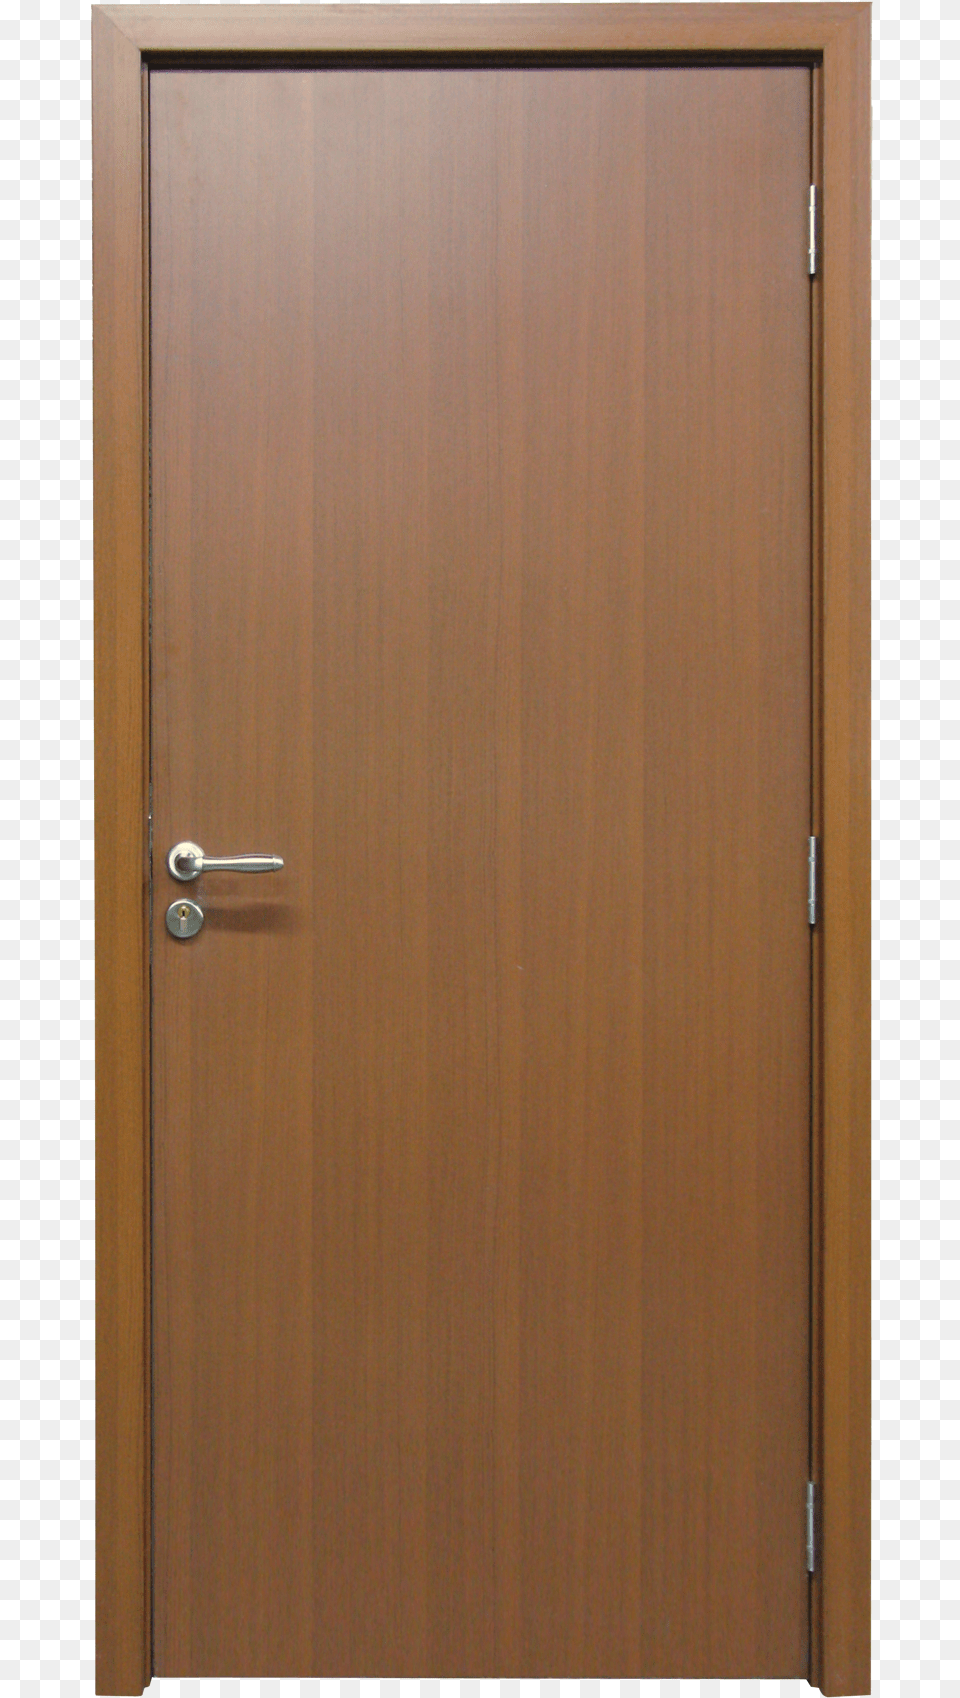 Pvc Tecnocom Presenta Nuevo Sistema De Puertas Interiores, Door, Wood, Closet, Cupboard Png